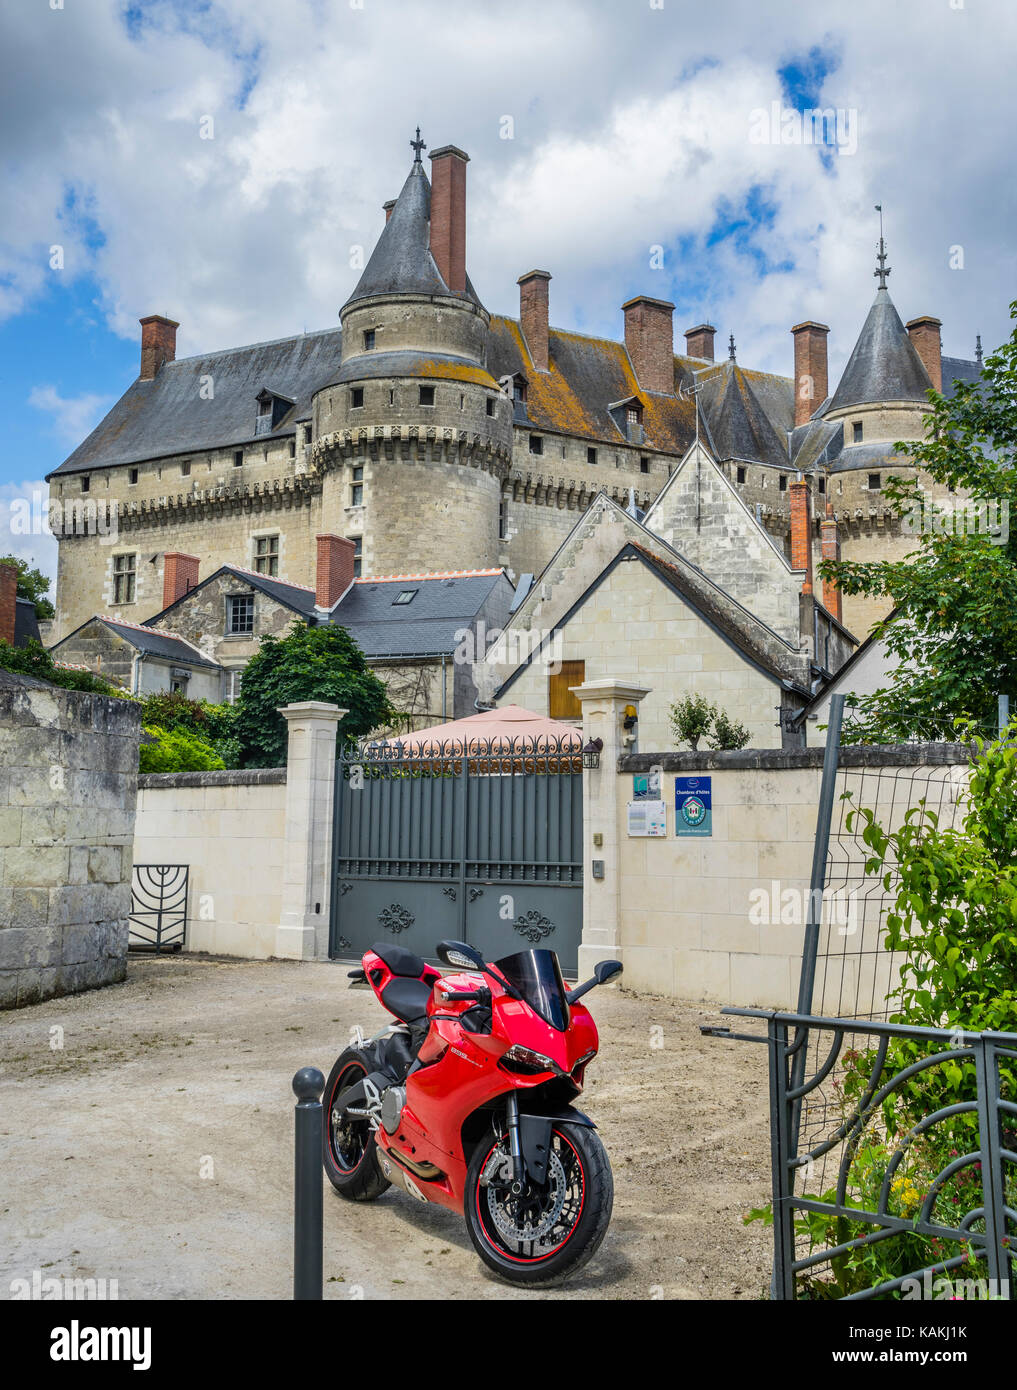 Francia, Indre-et-Loire departamento, Touraine, Langeais, callejón vista de las torres y almenas del Château de Langeais Foto de stock